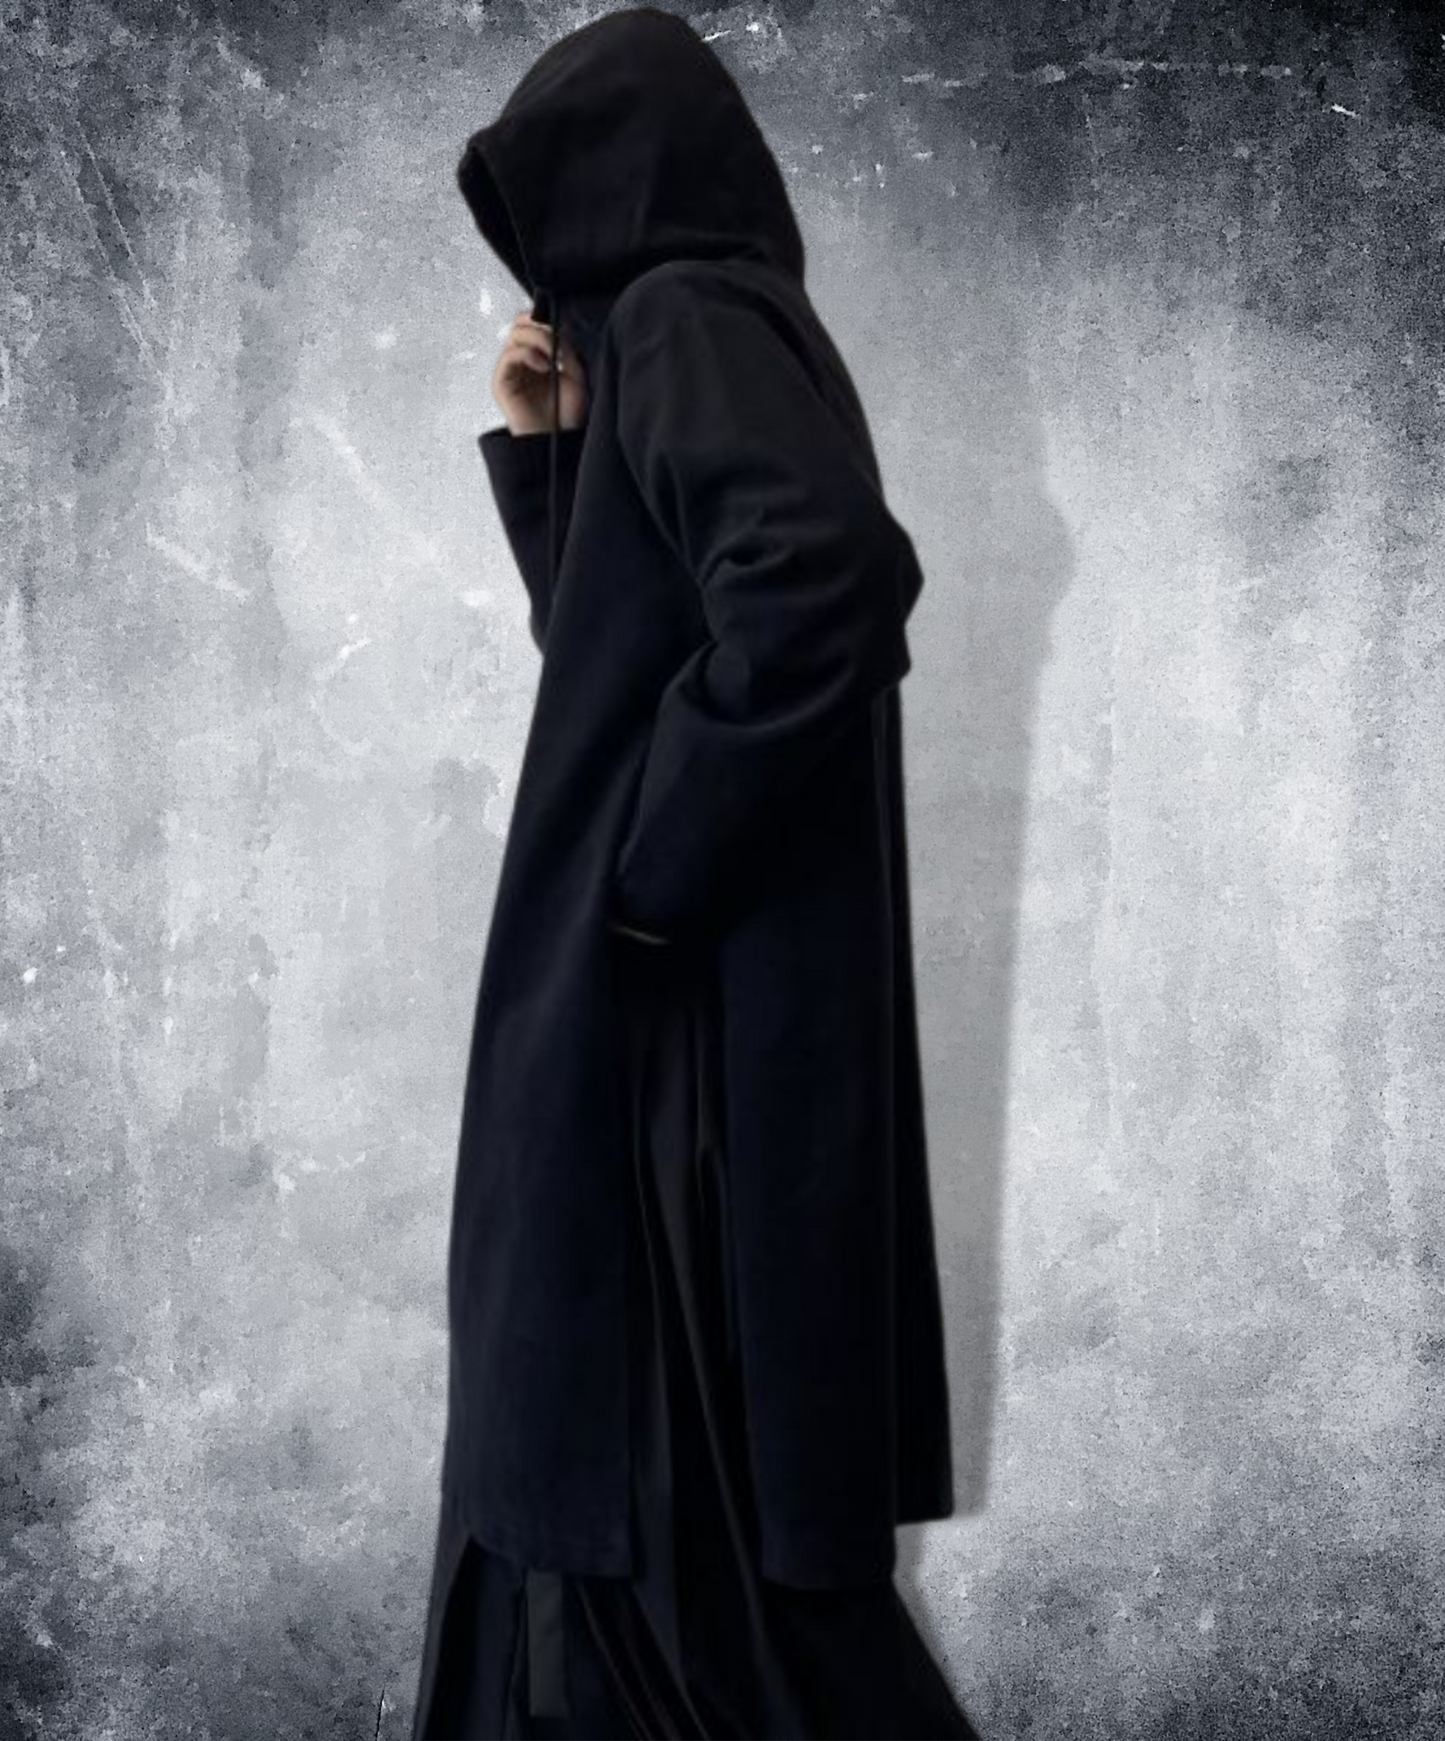 【style4】dark mode outfit set EN760（hoodie + pants Set）